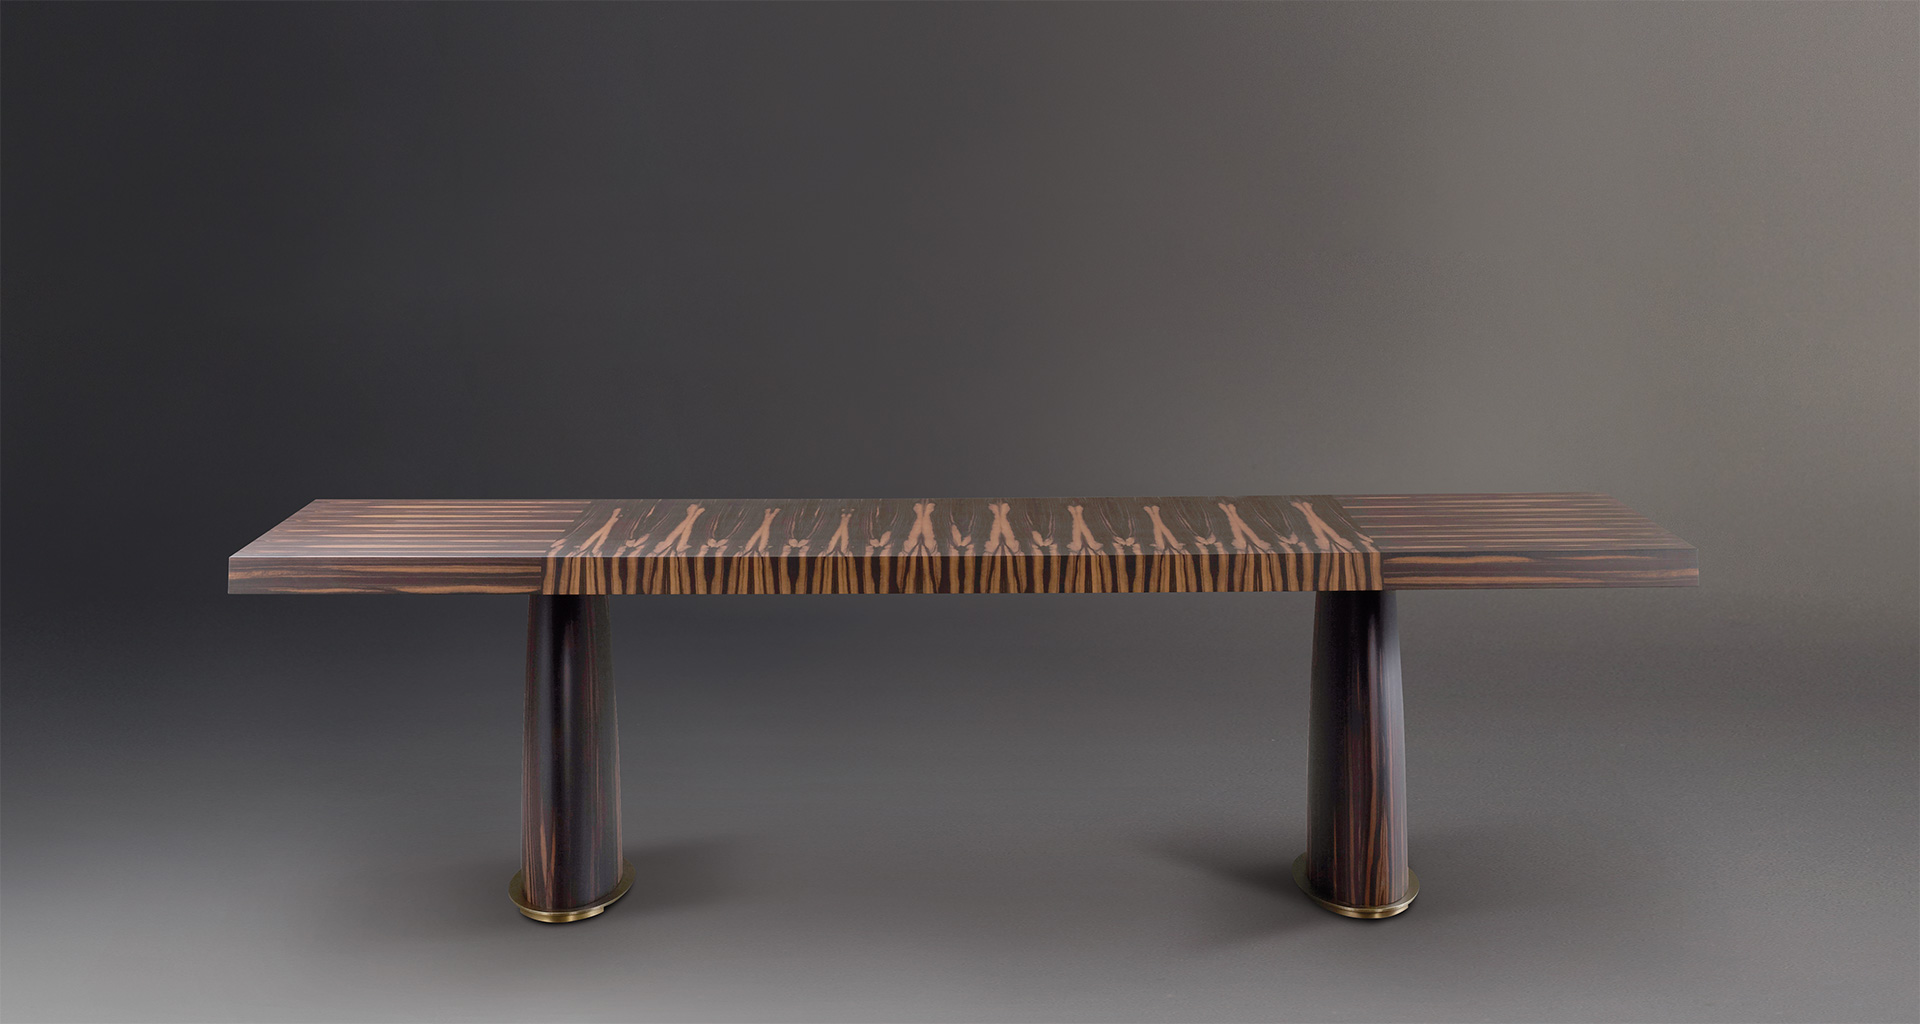 Goffredo è un tavolo da pranzo in legno con base in bronzo e top a quadri o righe, del catalogo di Promemoria | Promemoria